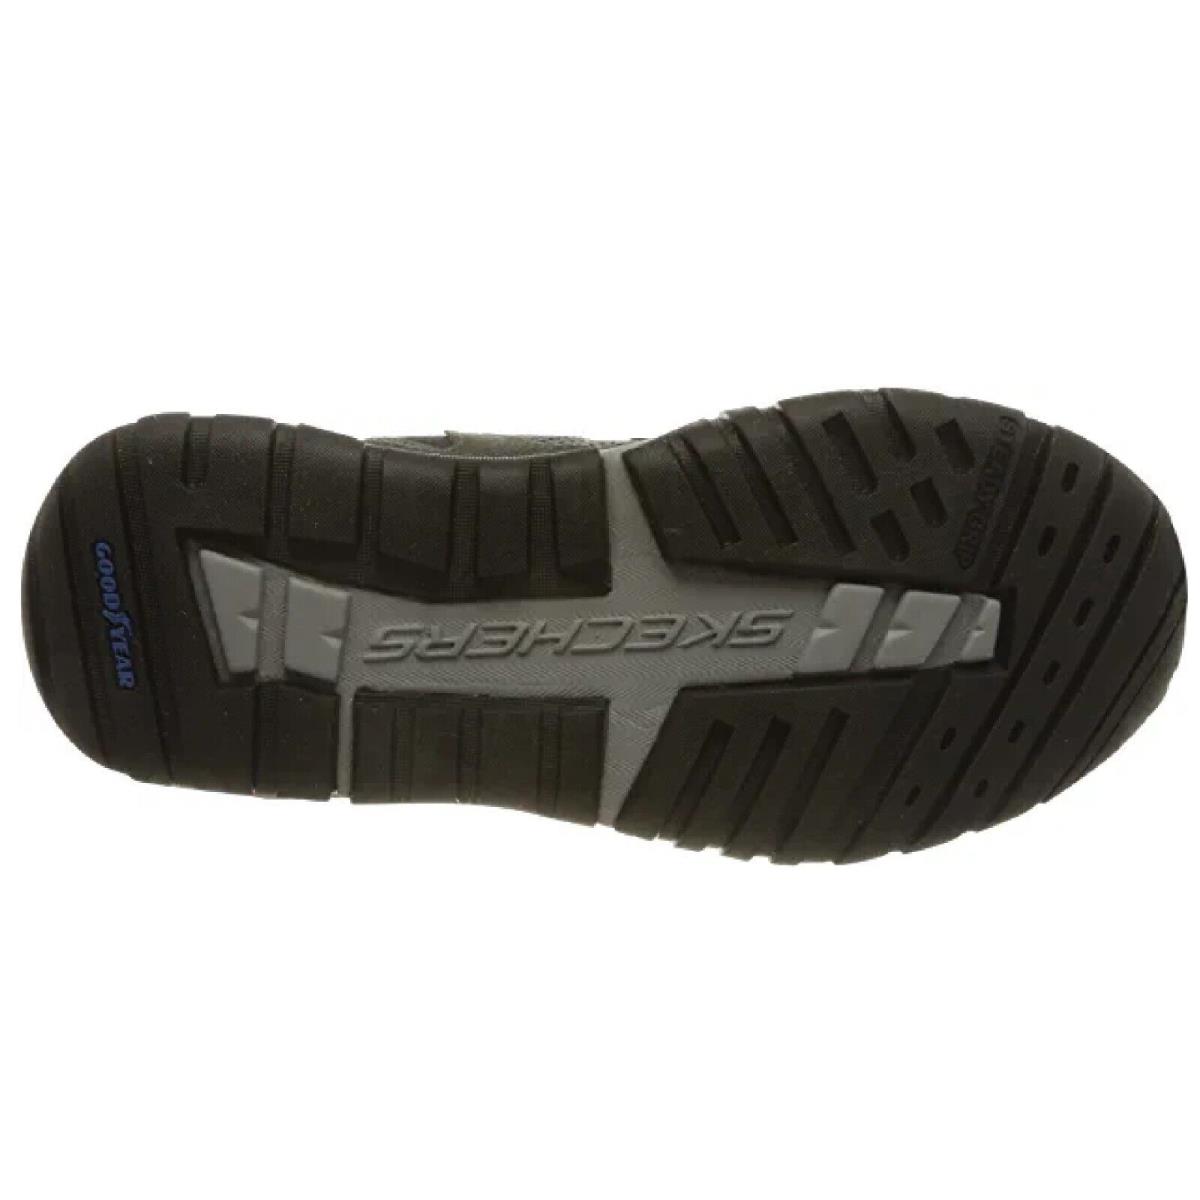 Skechers shoes DSRT - Black 7